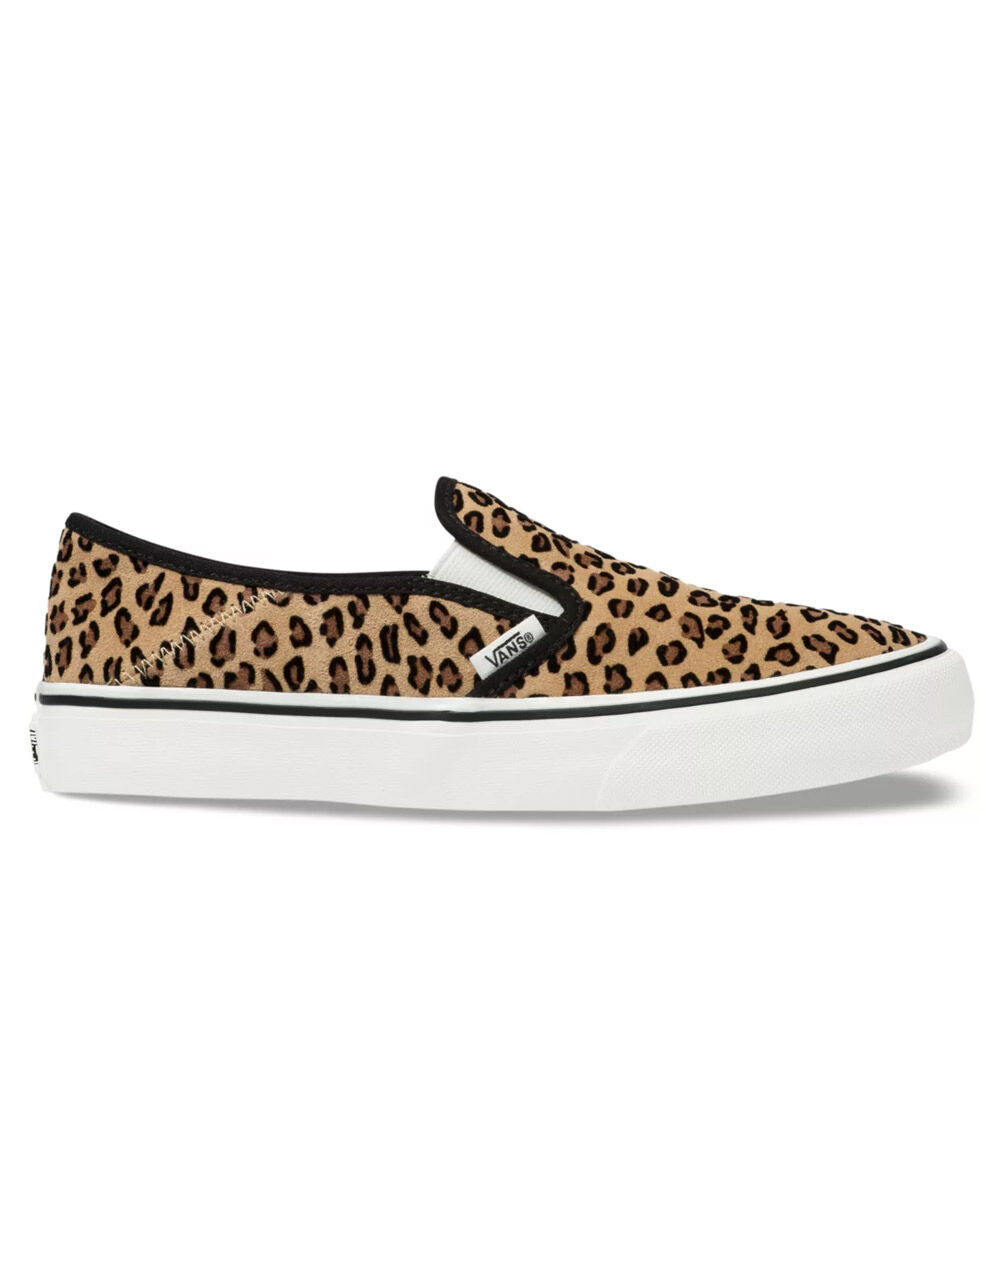 VANS Leopard Slip-On SF Shoes - LEOPARD | Tillys